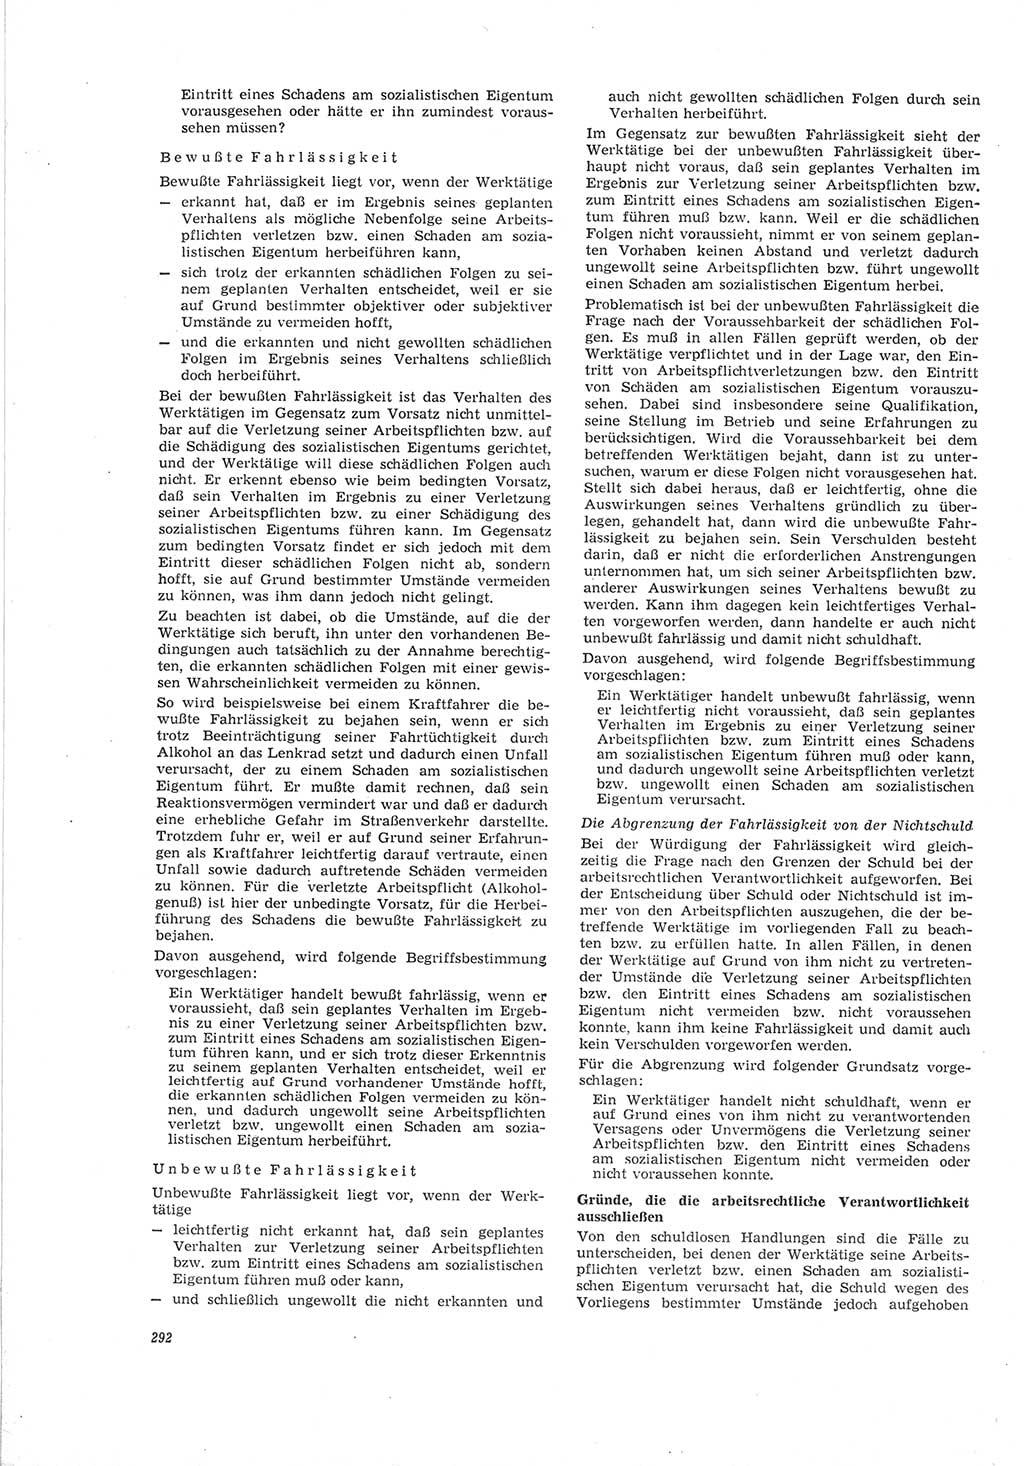 Neue Justiz (NJ), Zeitschrift für Recht und Rechtswissenschaft [Deutsche Demokratische Republik (DDR)], 19. Jahrgang 1965, Seite 292 (NJ DDR 1965, S. 292)